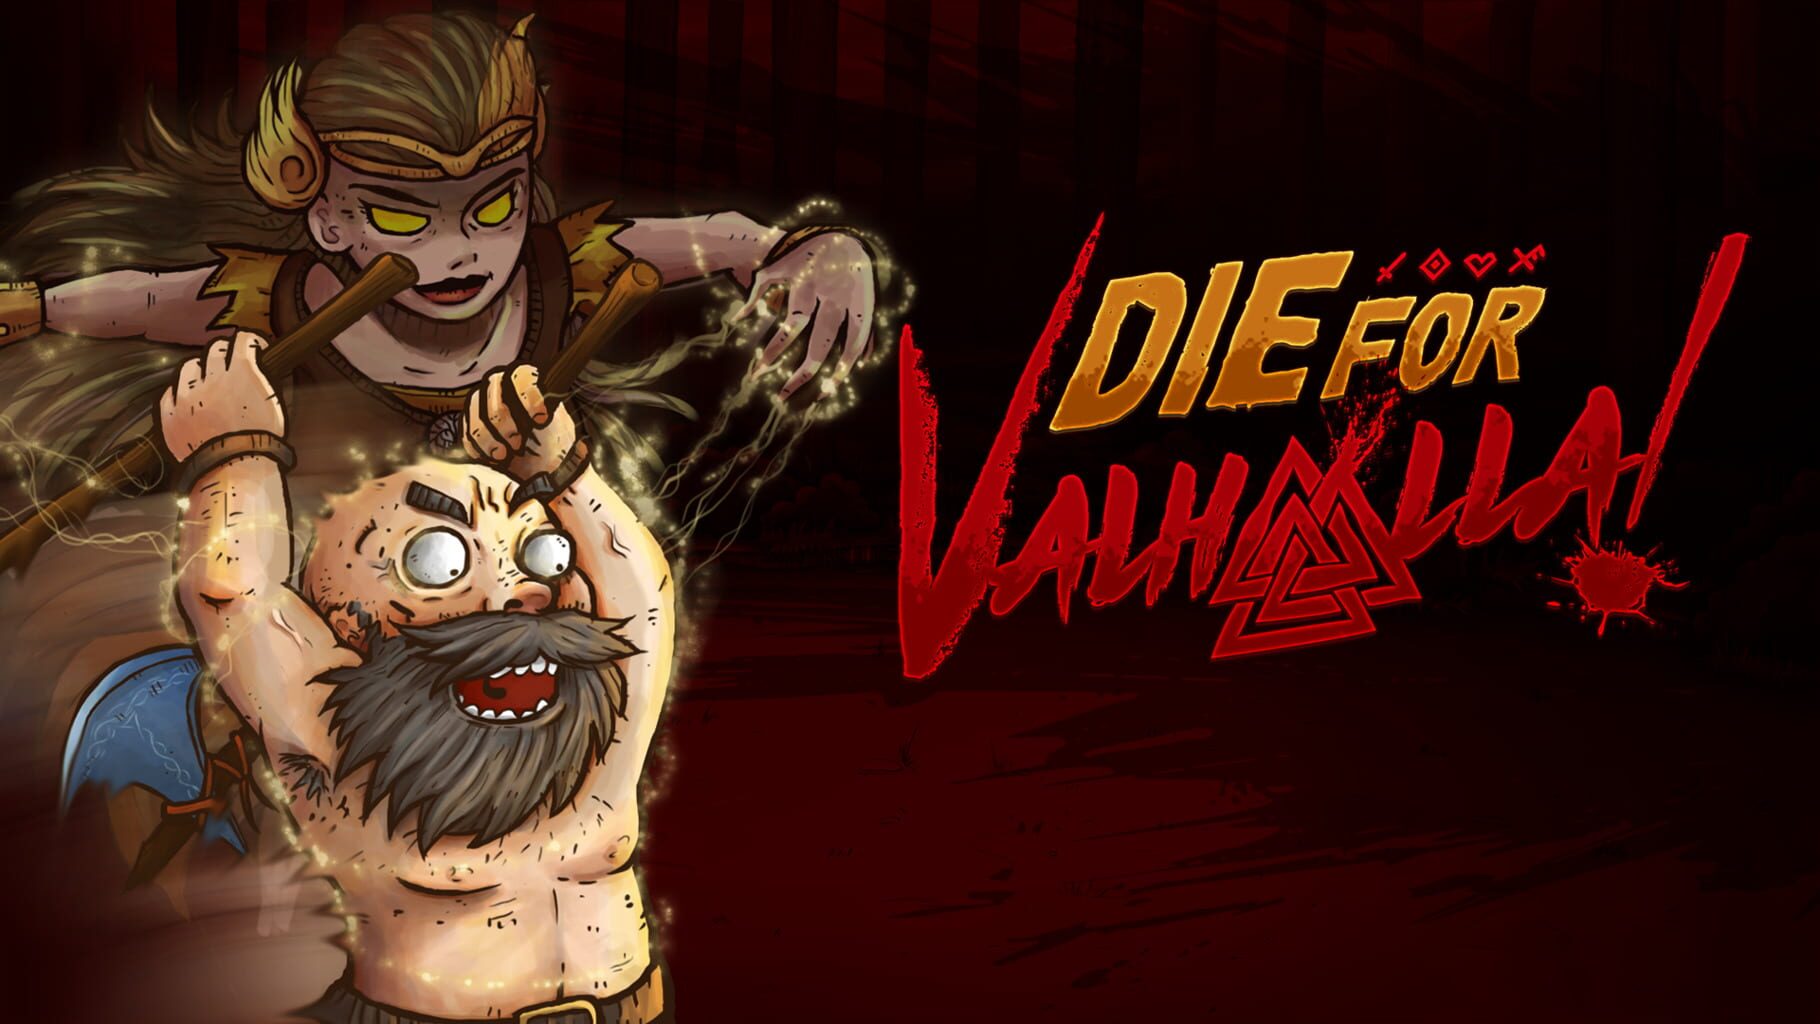 Die for Valhalla! artwork